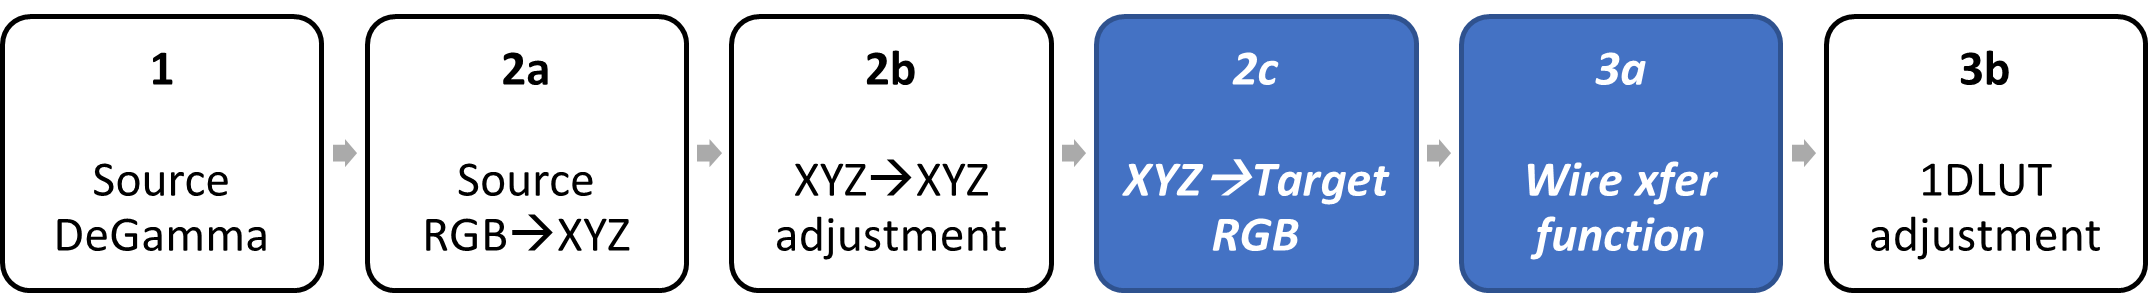 标识 xyz 以面向 rgb 和电汇函数阶段的框图